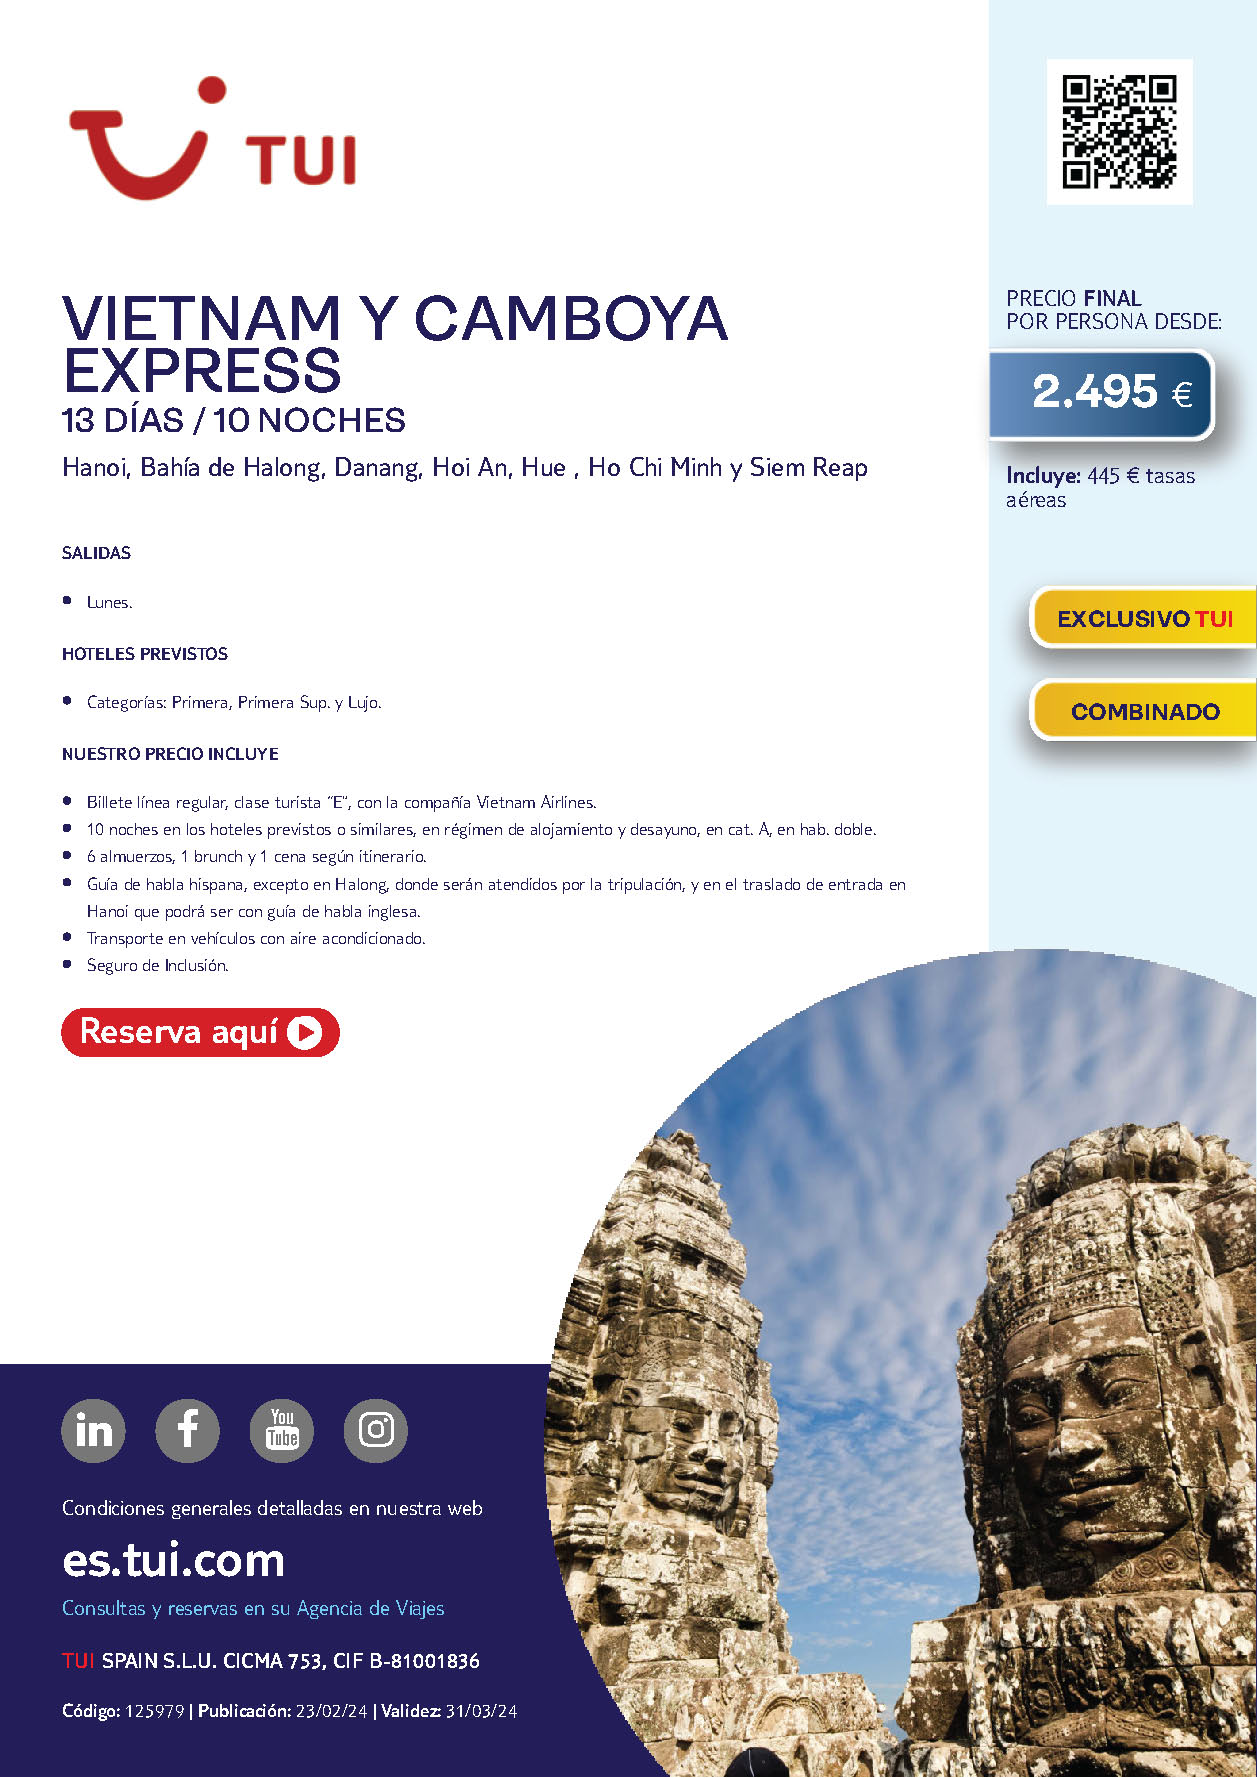 Oferta Tui 2024 circuito Vietnam y Camboya Express 13 dias salidas desde Madrid Barcelona vuelos Vietnam Airlines